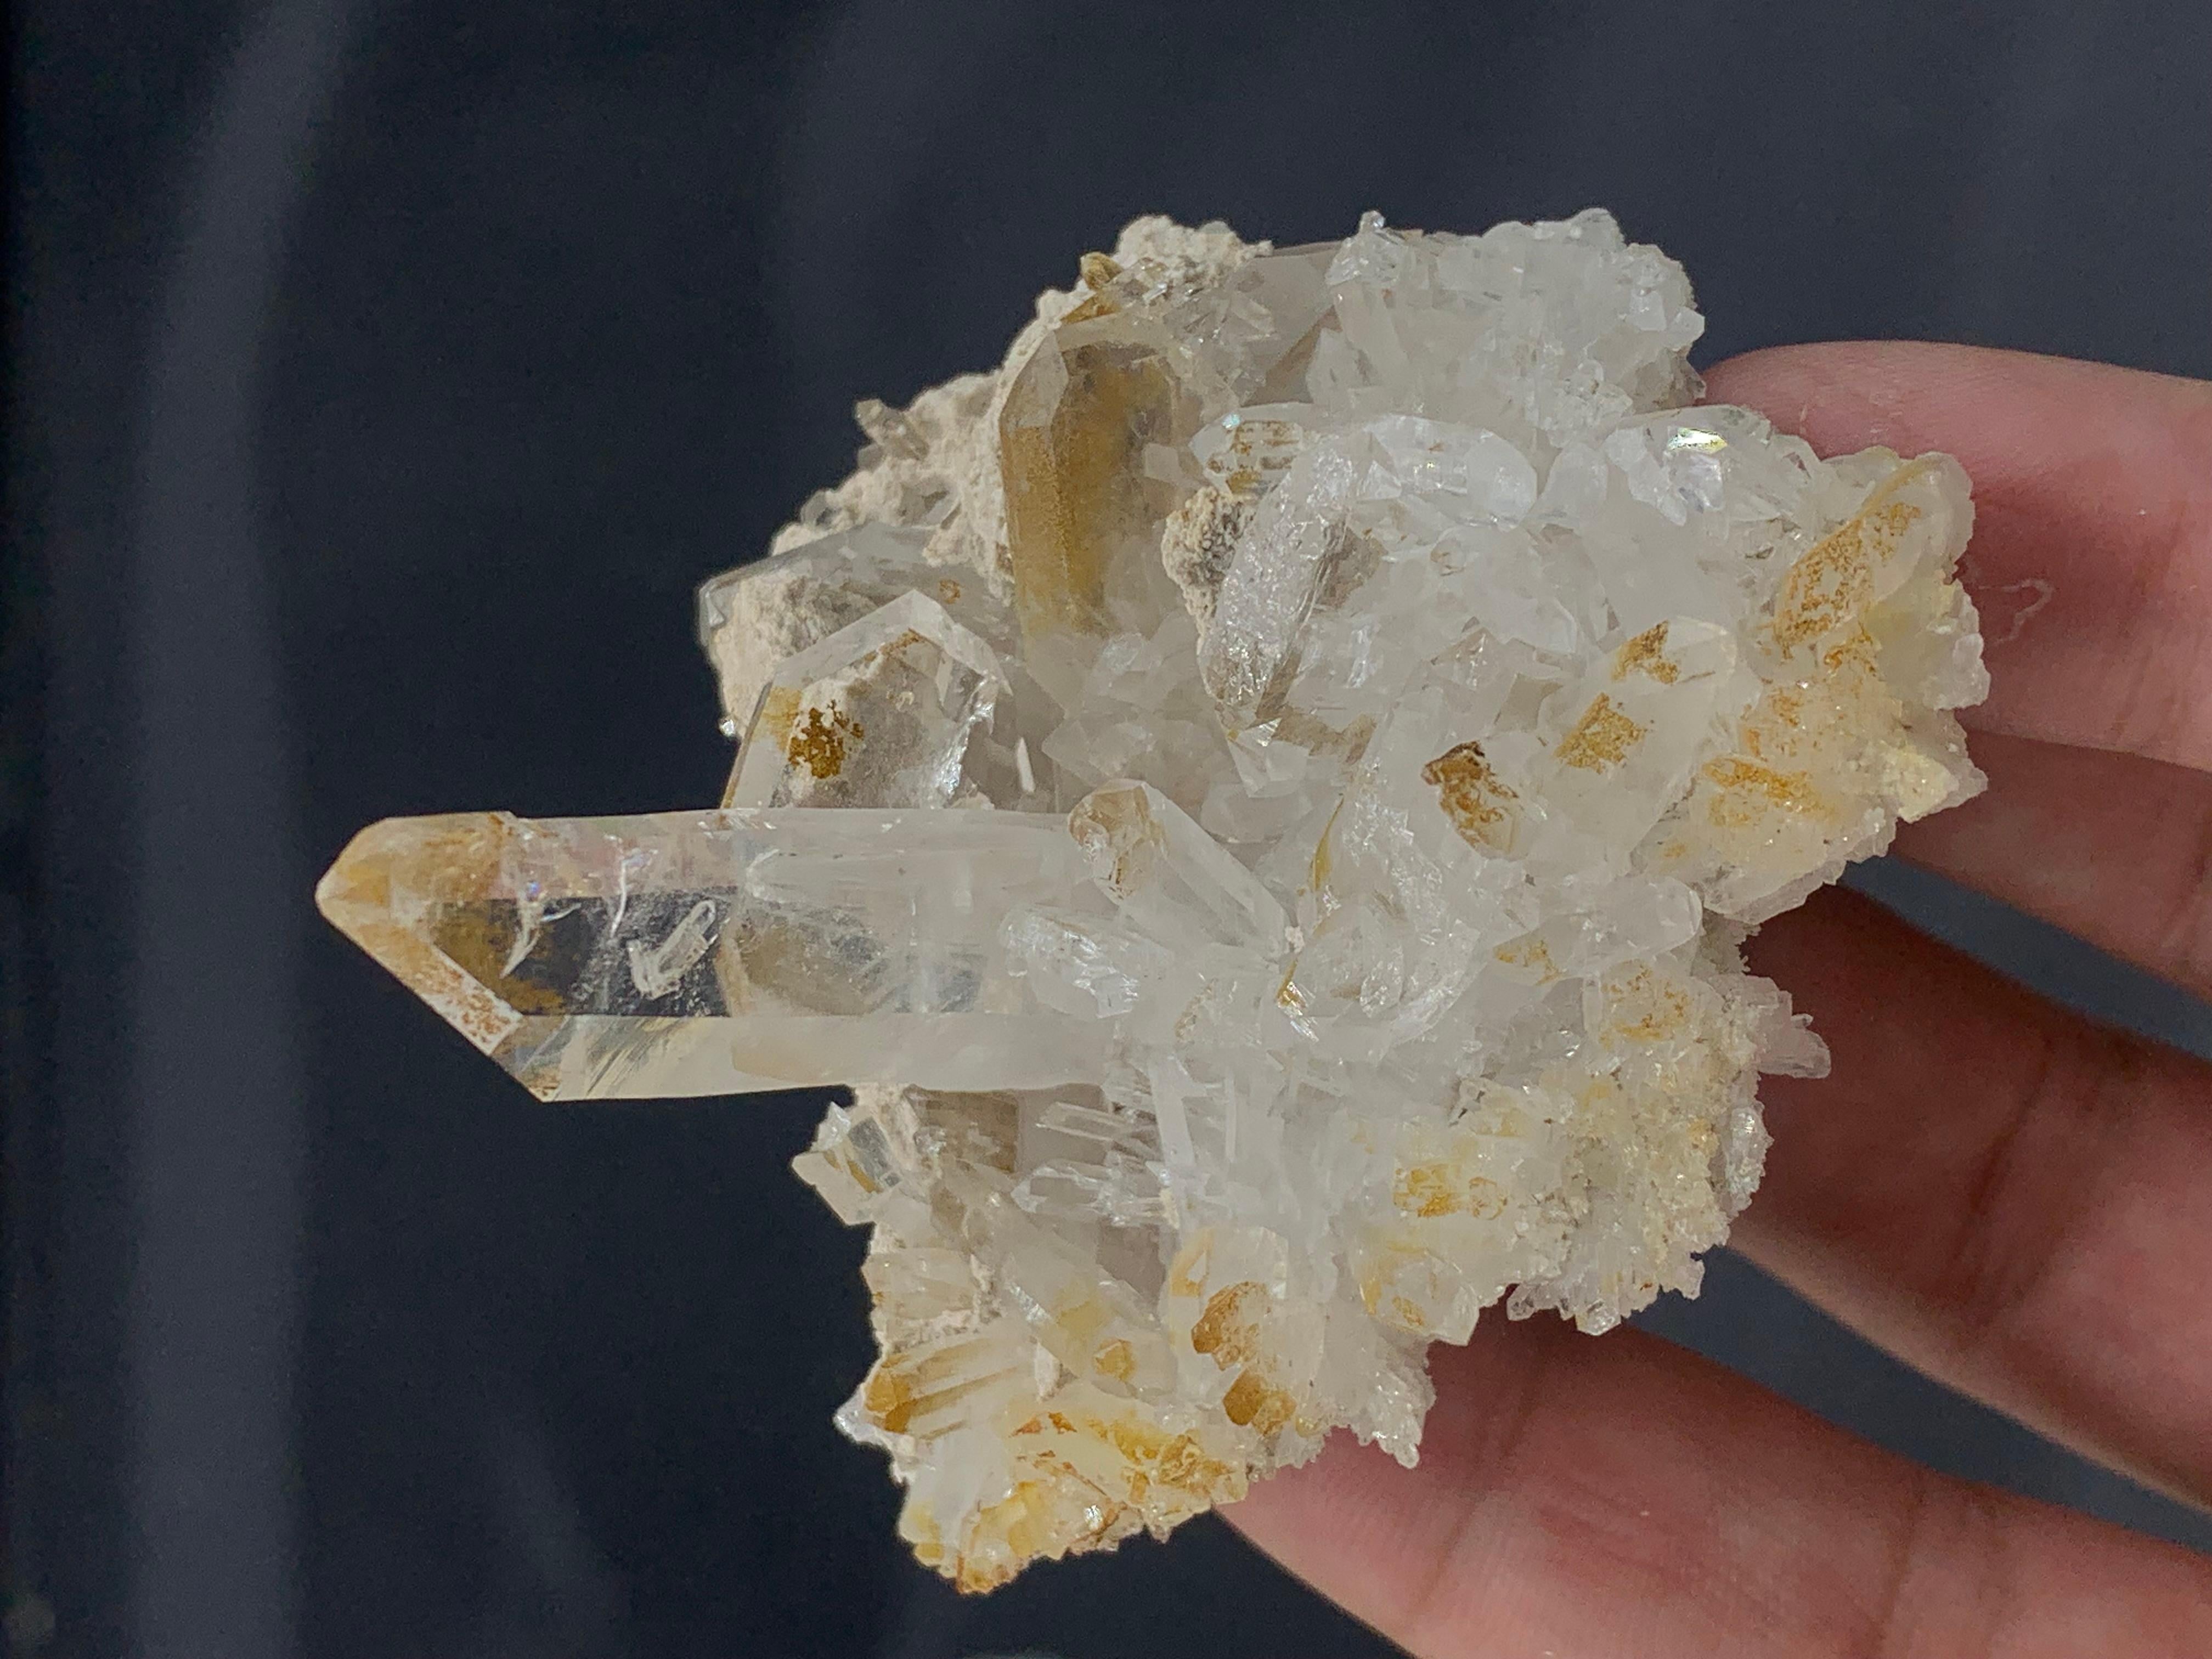 Pakistani Gorgeous Natural Faden Quartz Cluster Specimen From Balochistan Pakistan Mine For Sale